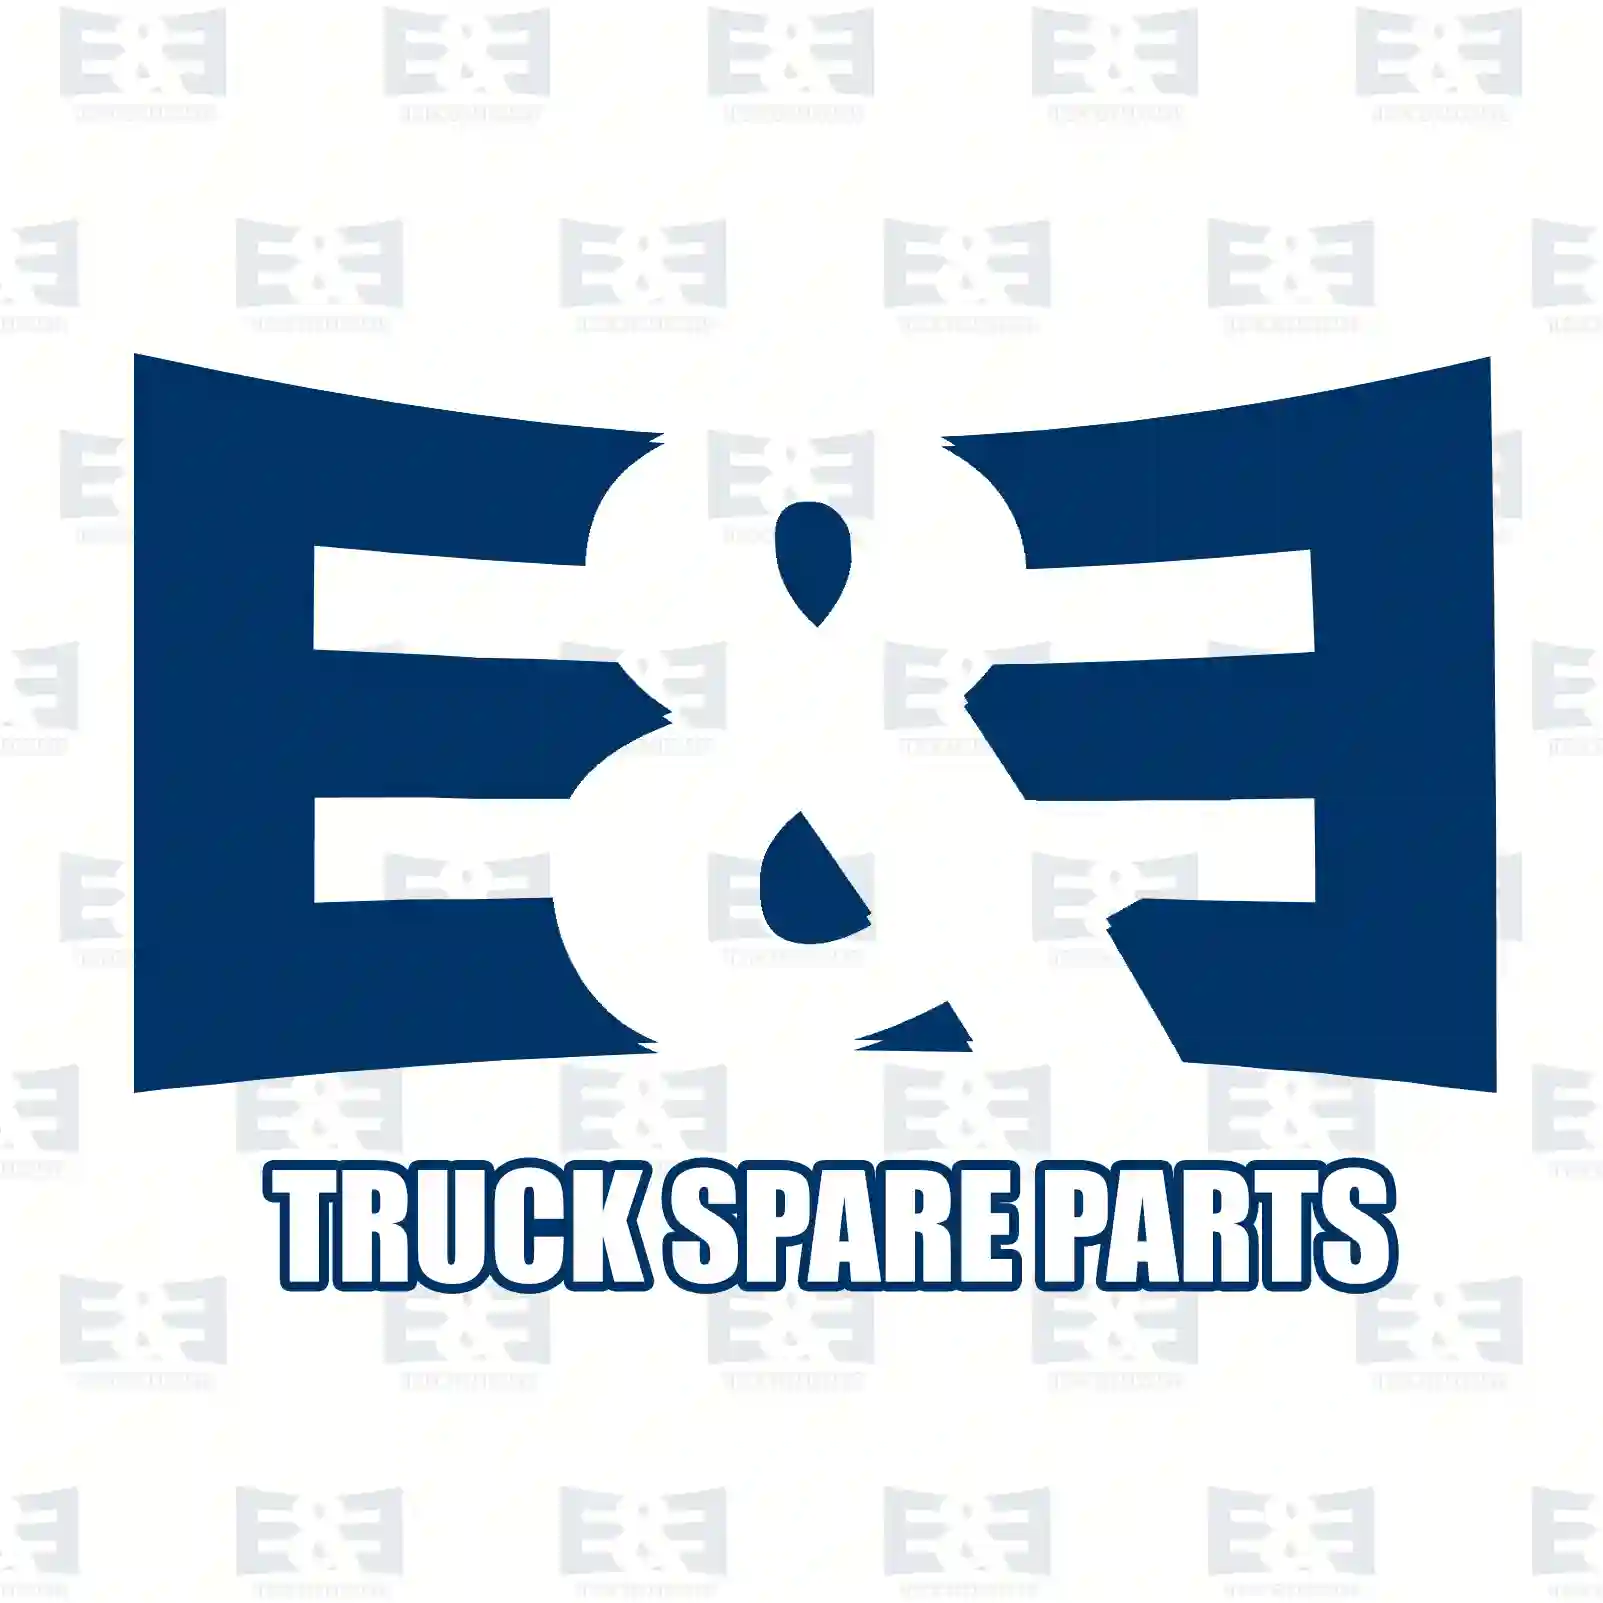 Brake drum, 2E2293717, 21020448, 21020448S, , , , , ||  2E2293717 E&E Truck Spare Parts | Truck Spare Parts, Auotomotive Spare Parts Brake drum, 2E2293717, 21020448, 21020448S, , , , , ||  2E2293717 E&E Truck Spare Parts | Truck Spare Parts, Auotomotive Spare Parts